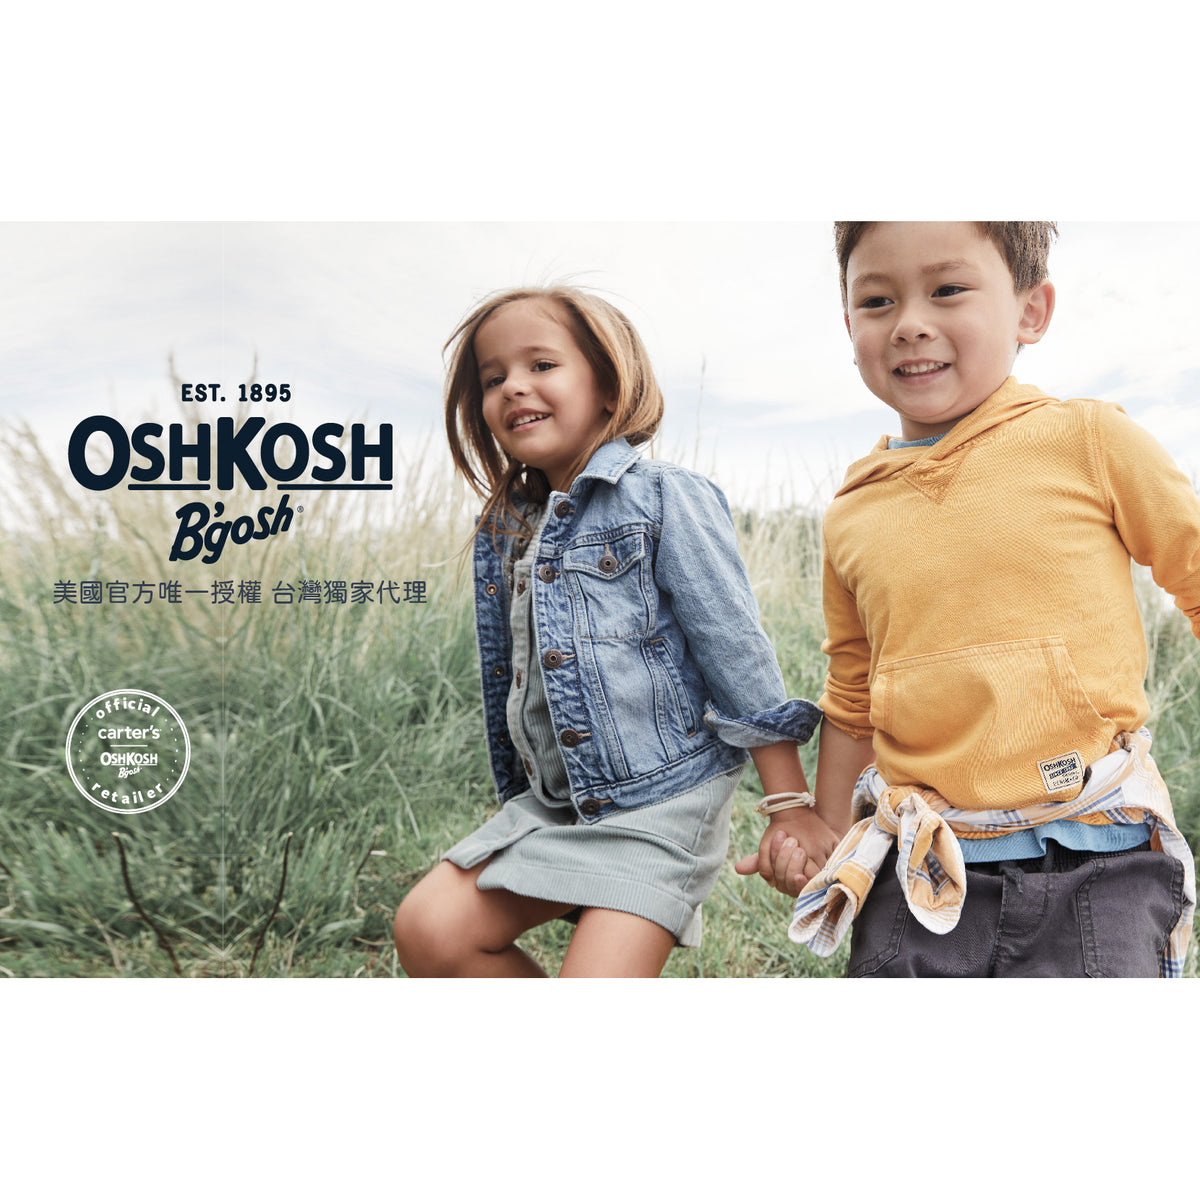 OshKosh 淺藍灰色抽繩長褲(2T-5T)